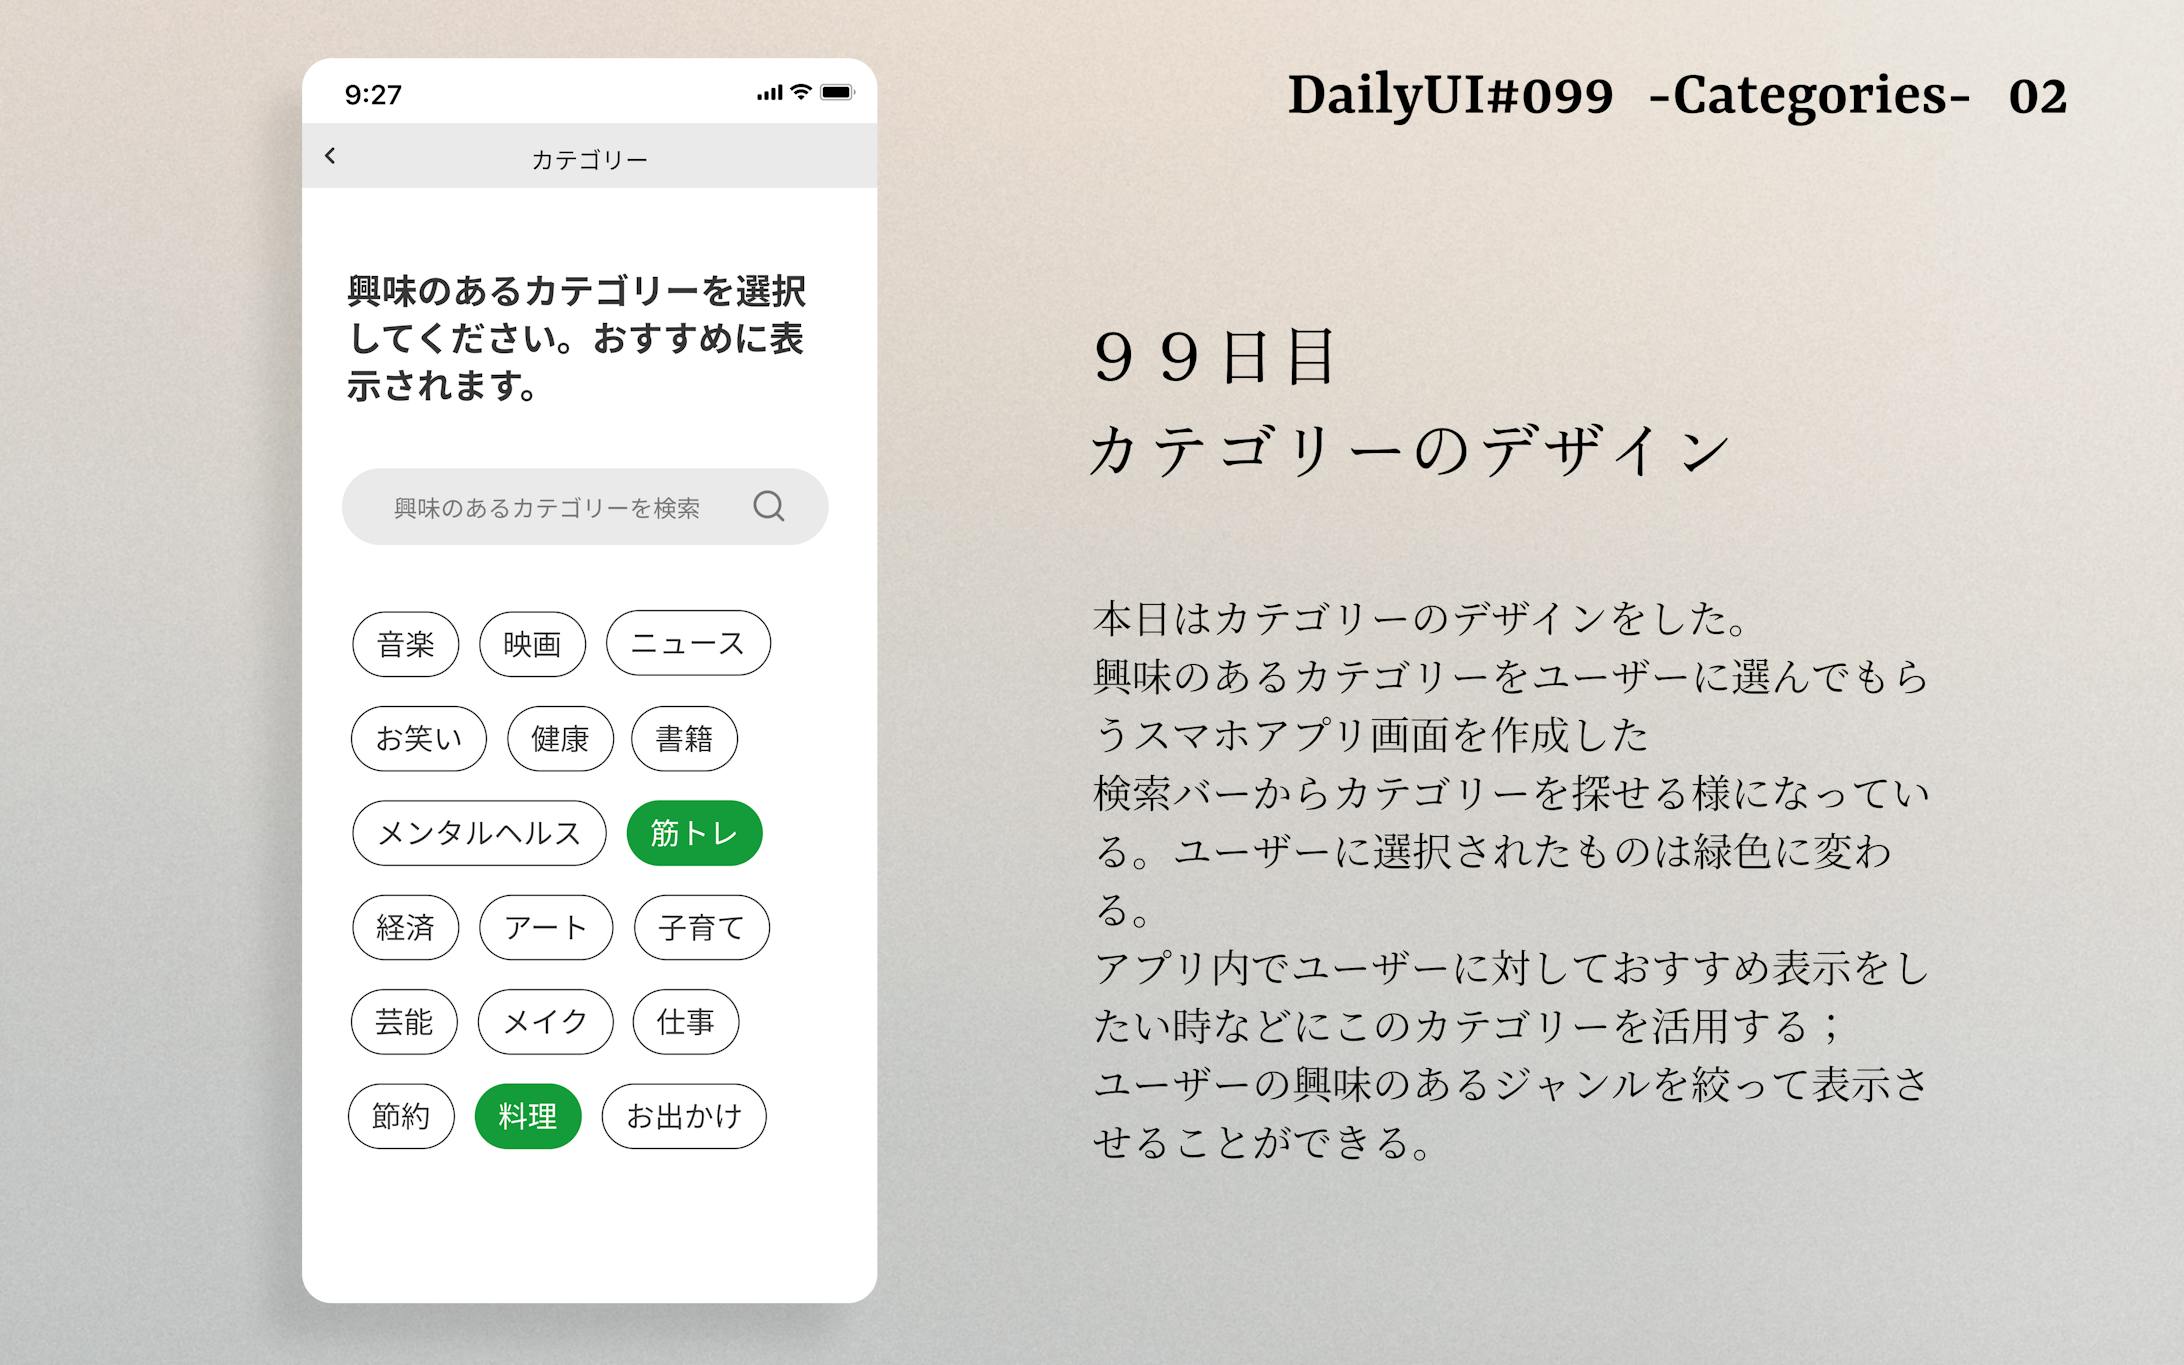 Daily UI #099-1